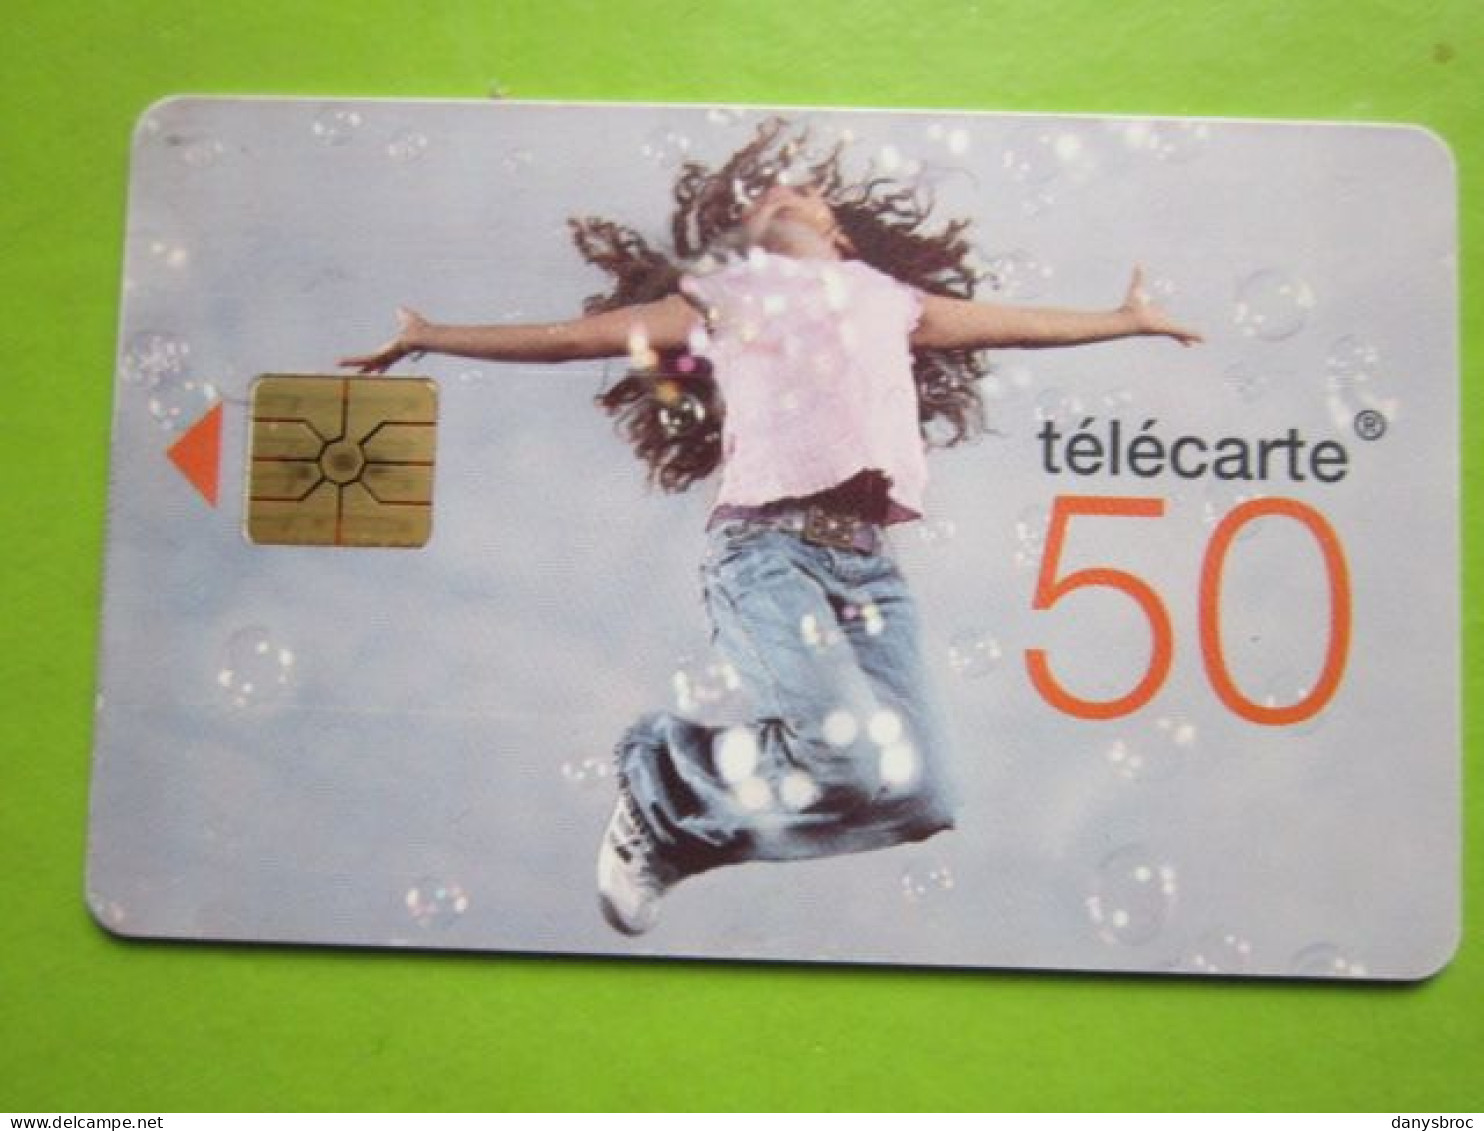 1/06/2010 - Télécarte 50 - 150000 CABINES - Teléfonos